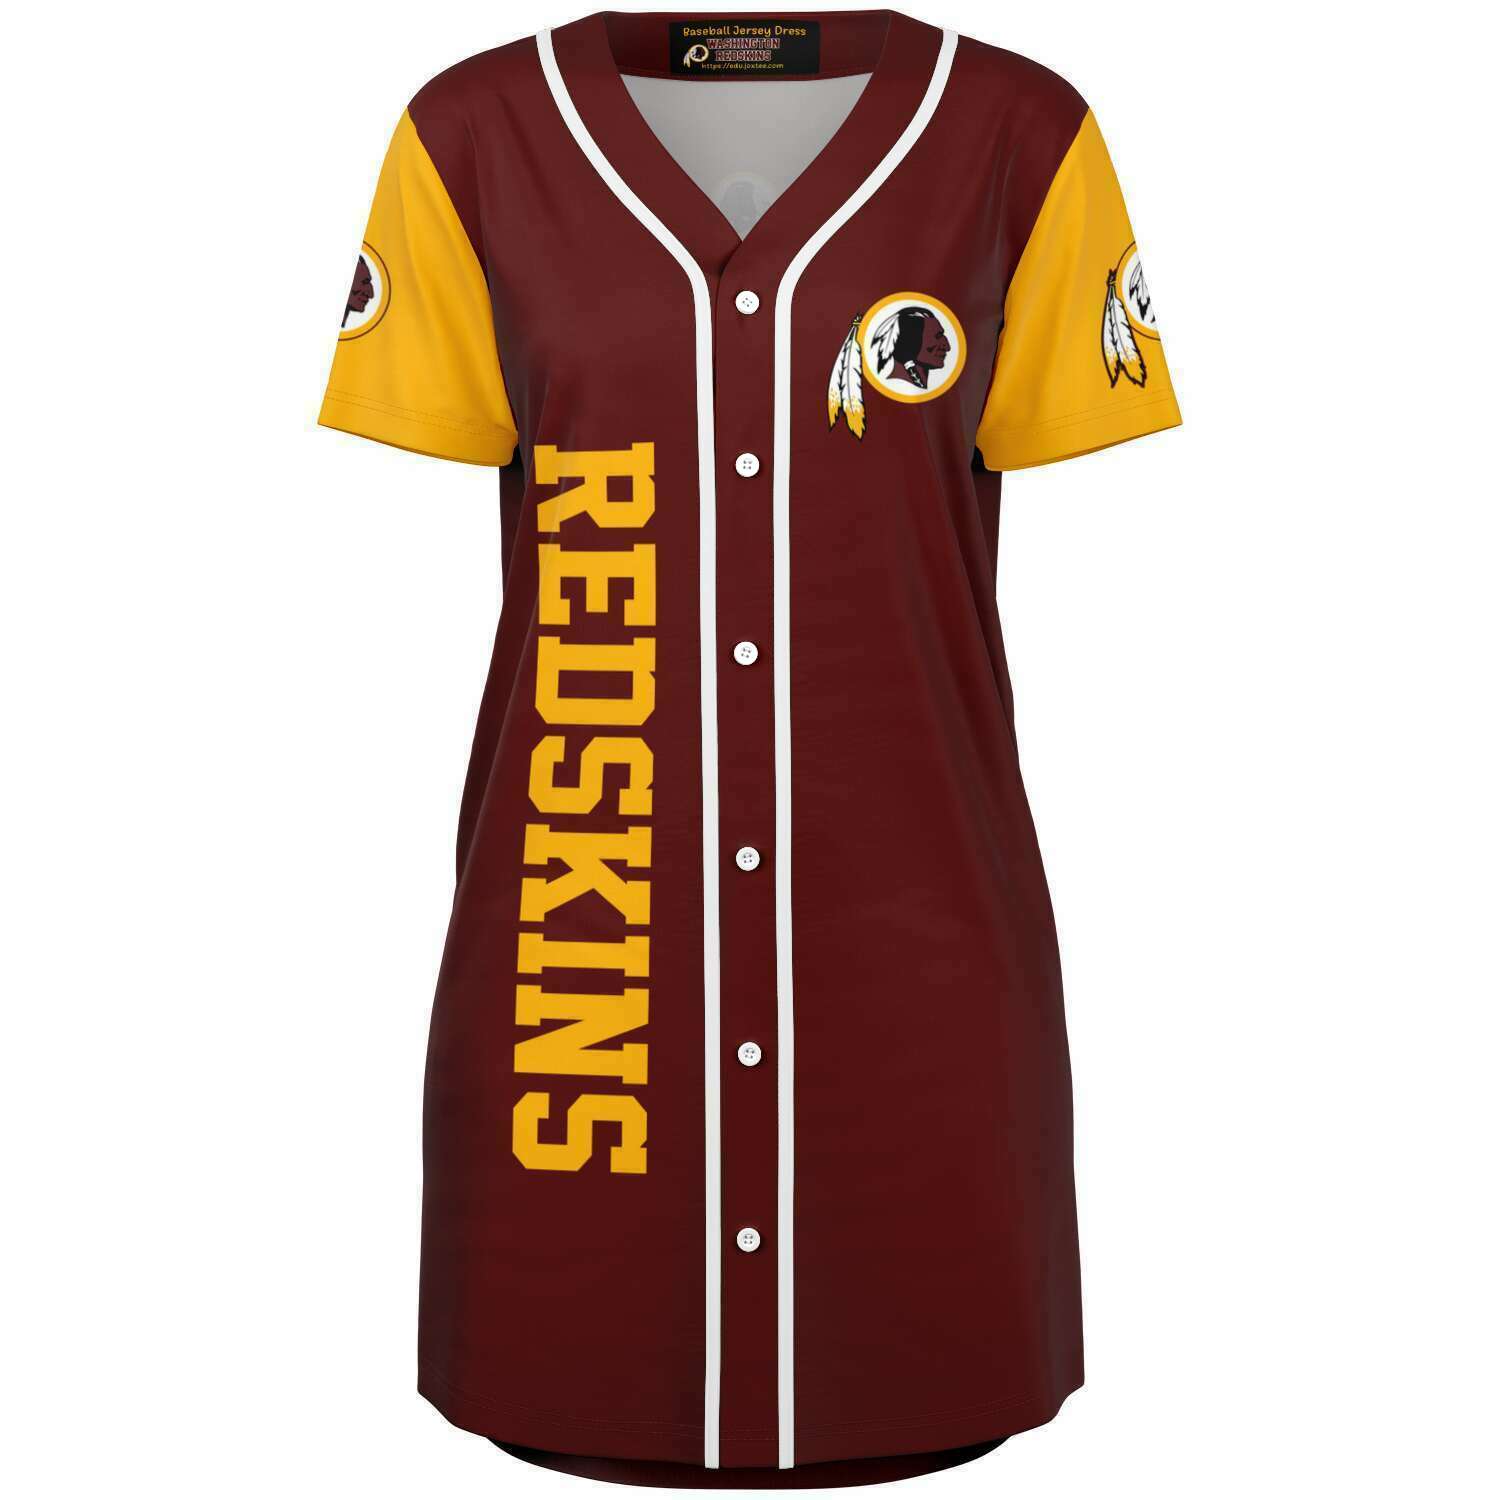 Southern Jaguars Baseball Jersey Dress v4129 - joxtee